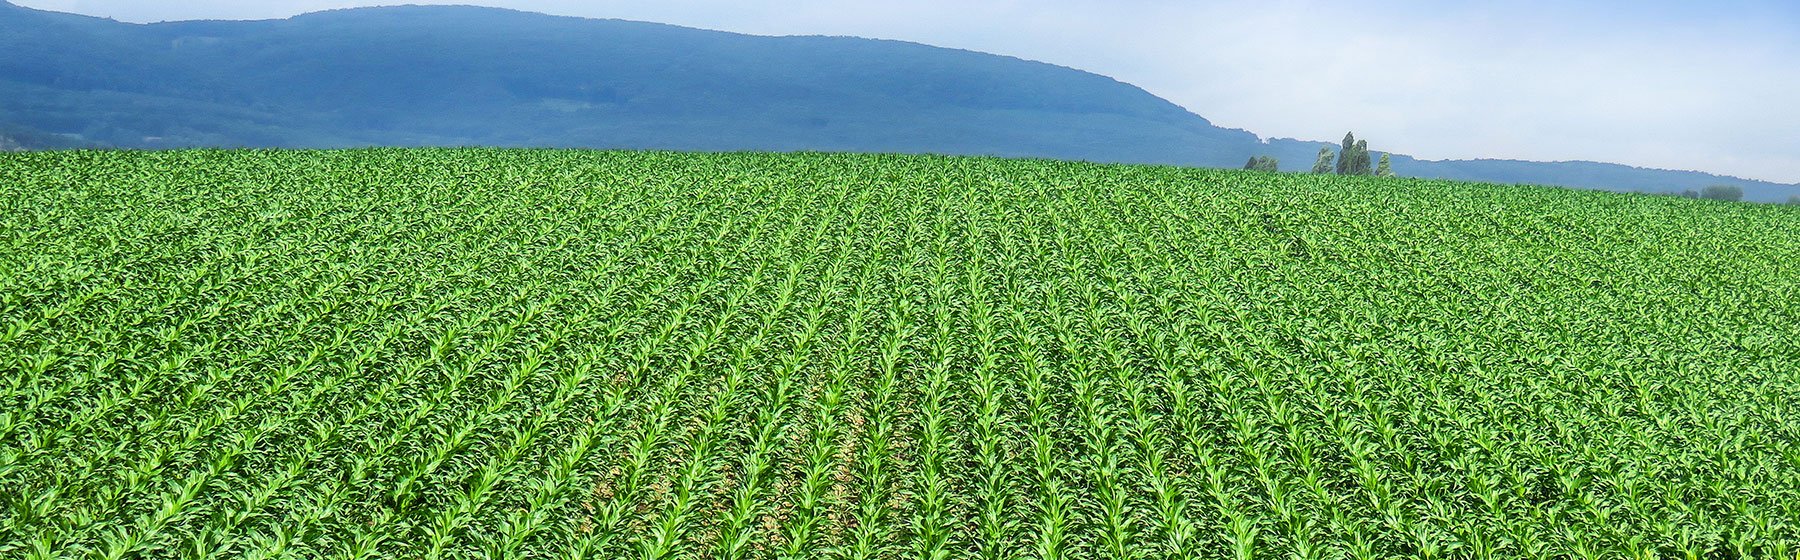 Agriculture in Kenya